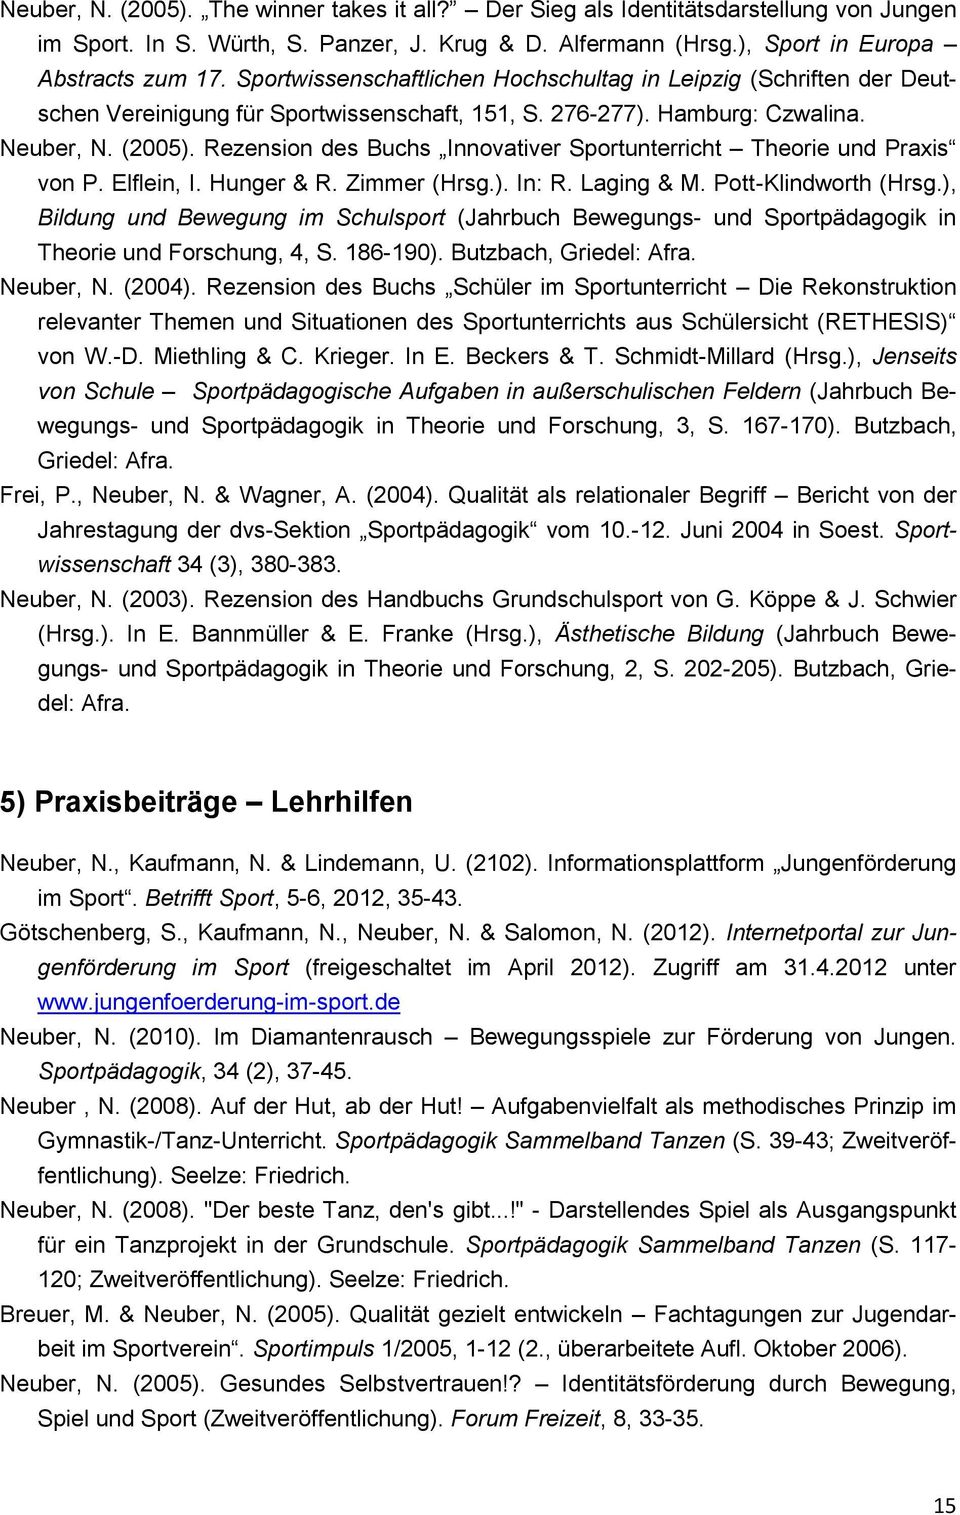 Rezension des Buchs Innovativer Sportunterricht Theorie und Praxis von P. Elflein, I. Hunger & R. Zimmer (Hrsg.). In: R. Laging & M. Pott-Klindworth (Hrsg.